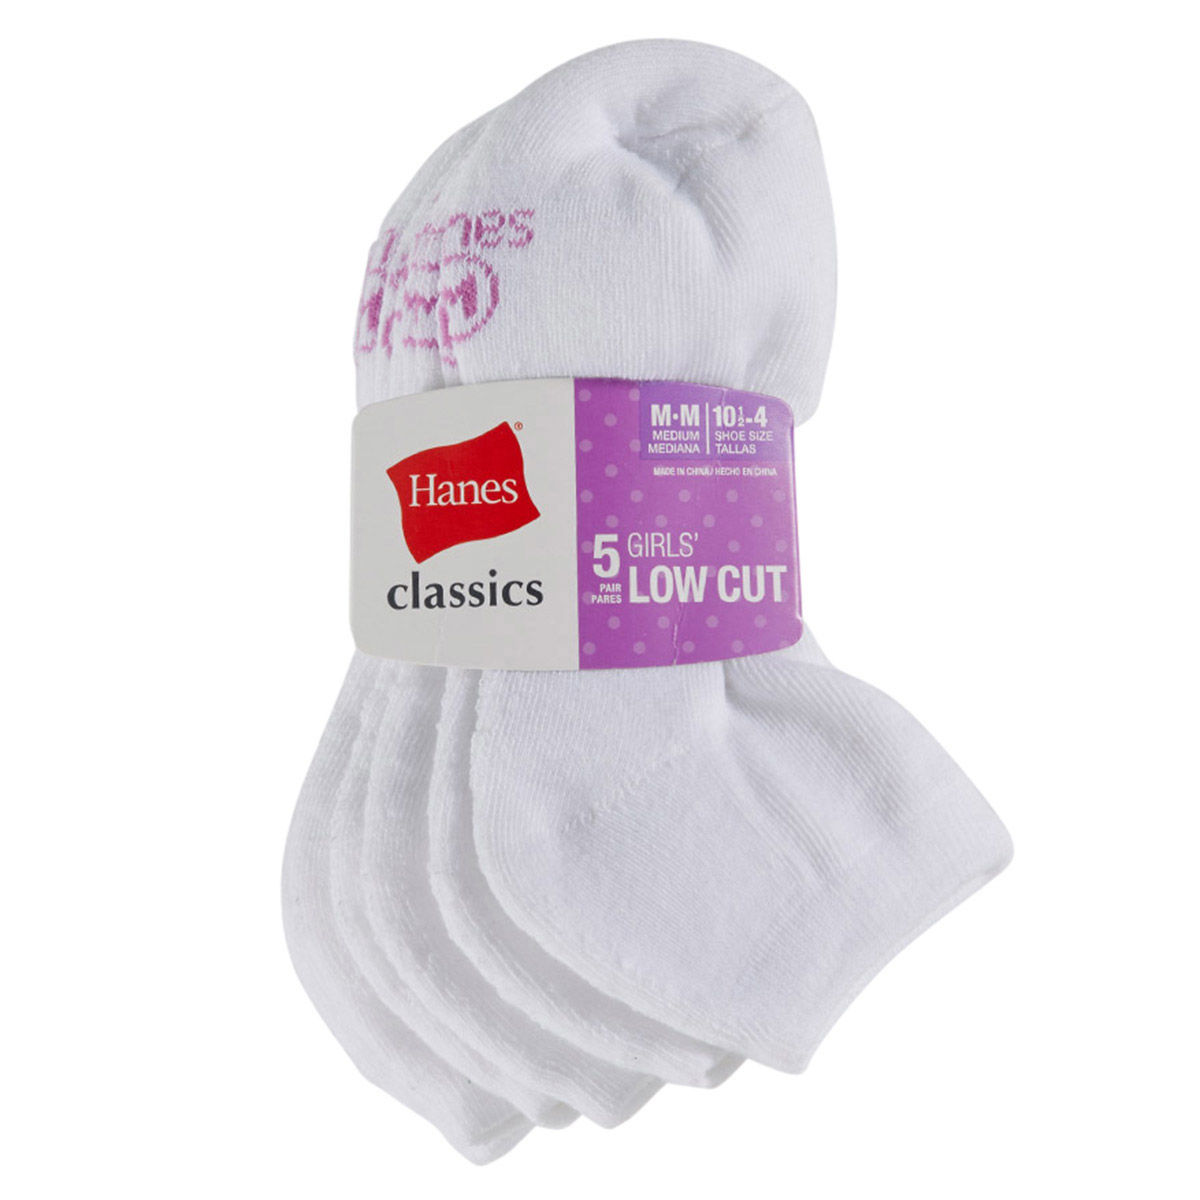 Hanes Girls' Classics Low Cut Socks, 5-Pack